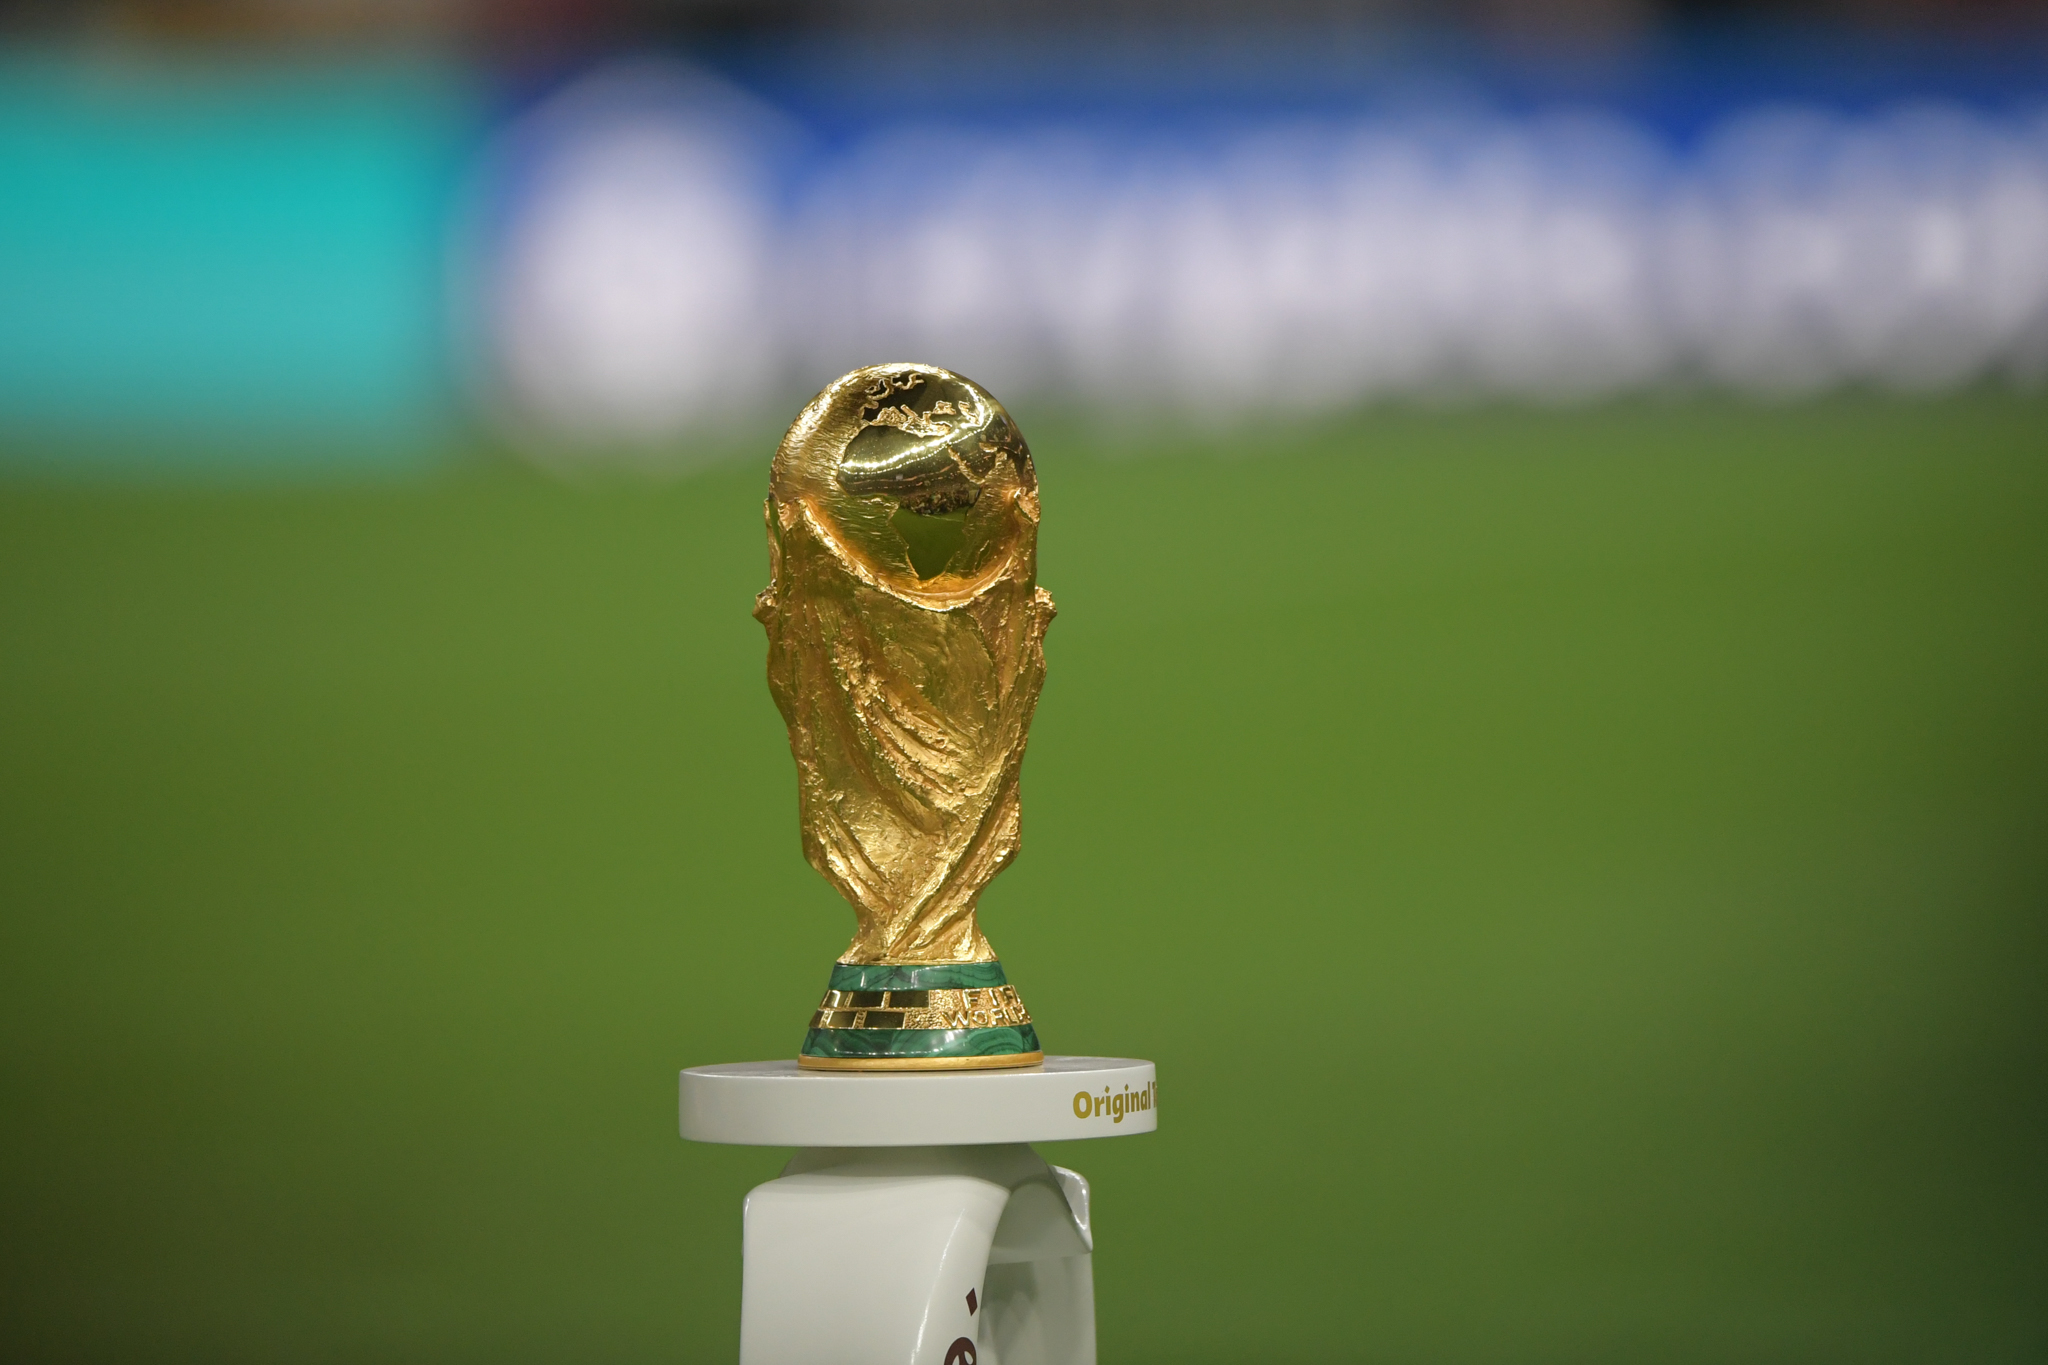 Presidente da Conmebol anuncia abertura da Copa do Mundo de 2030